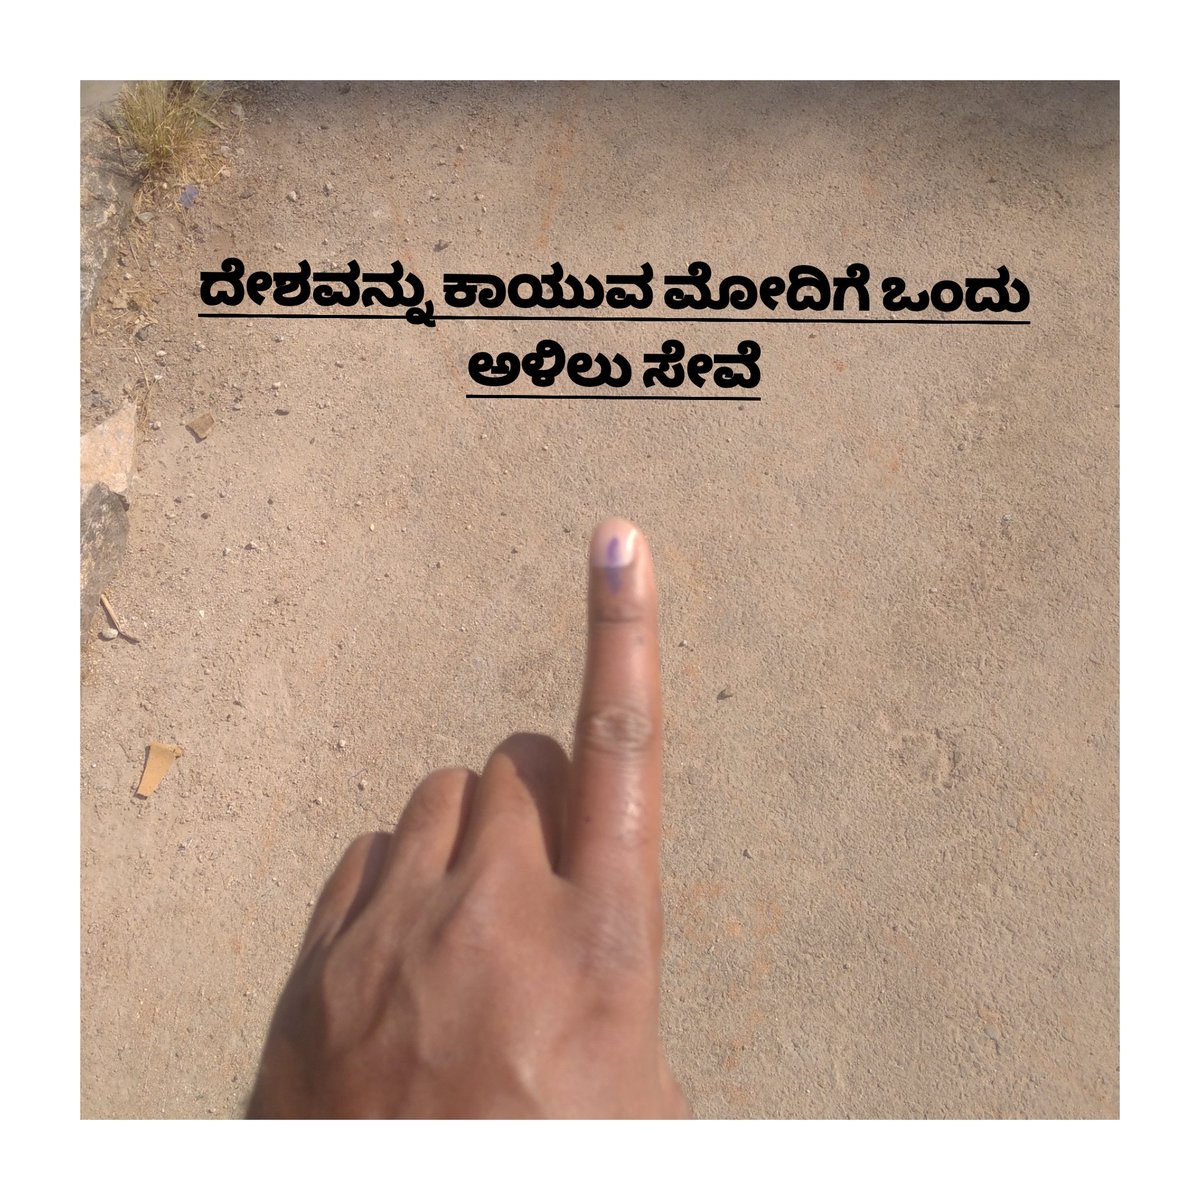 ದೇಶವನ್ನು ಕಾಯುವ ಮೋದಿಗೆ ಒಂದು ಅಳಿಲು ಸೇವೆ
#LokSabhaElections2024 
#ModiAgain2024